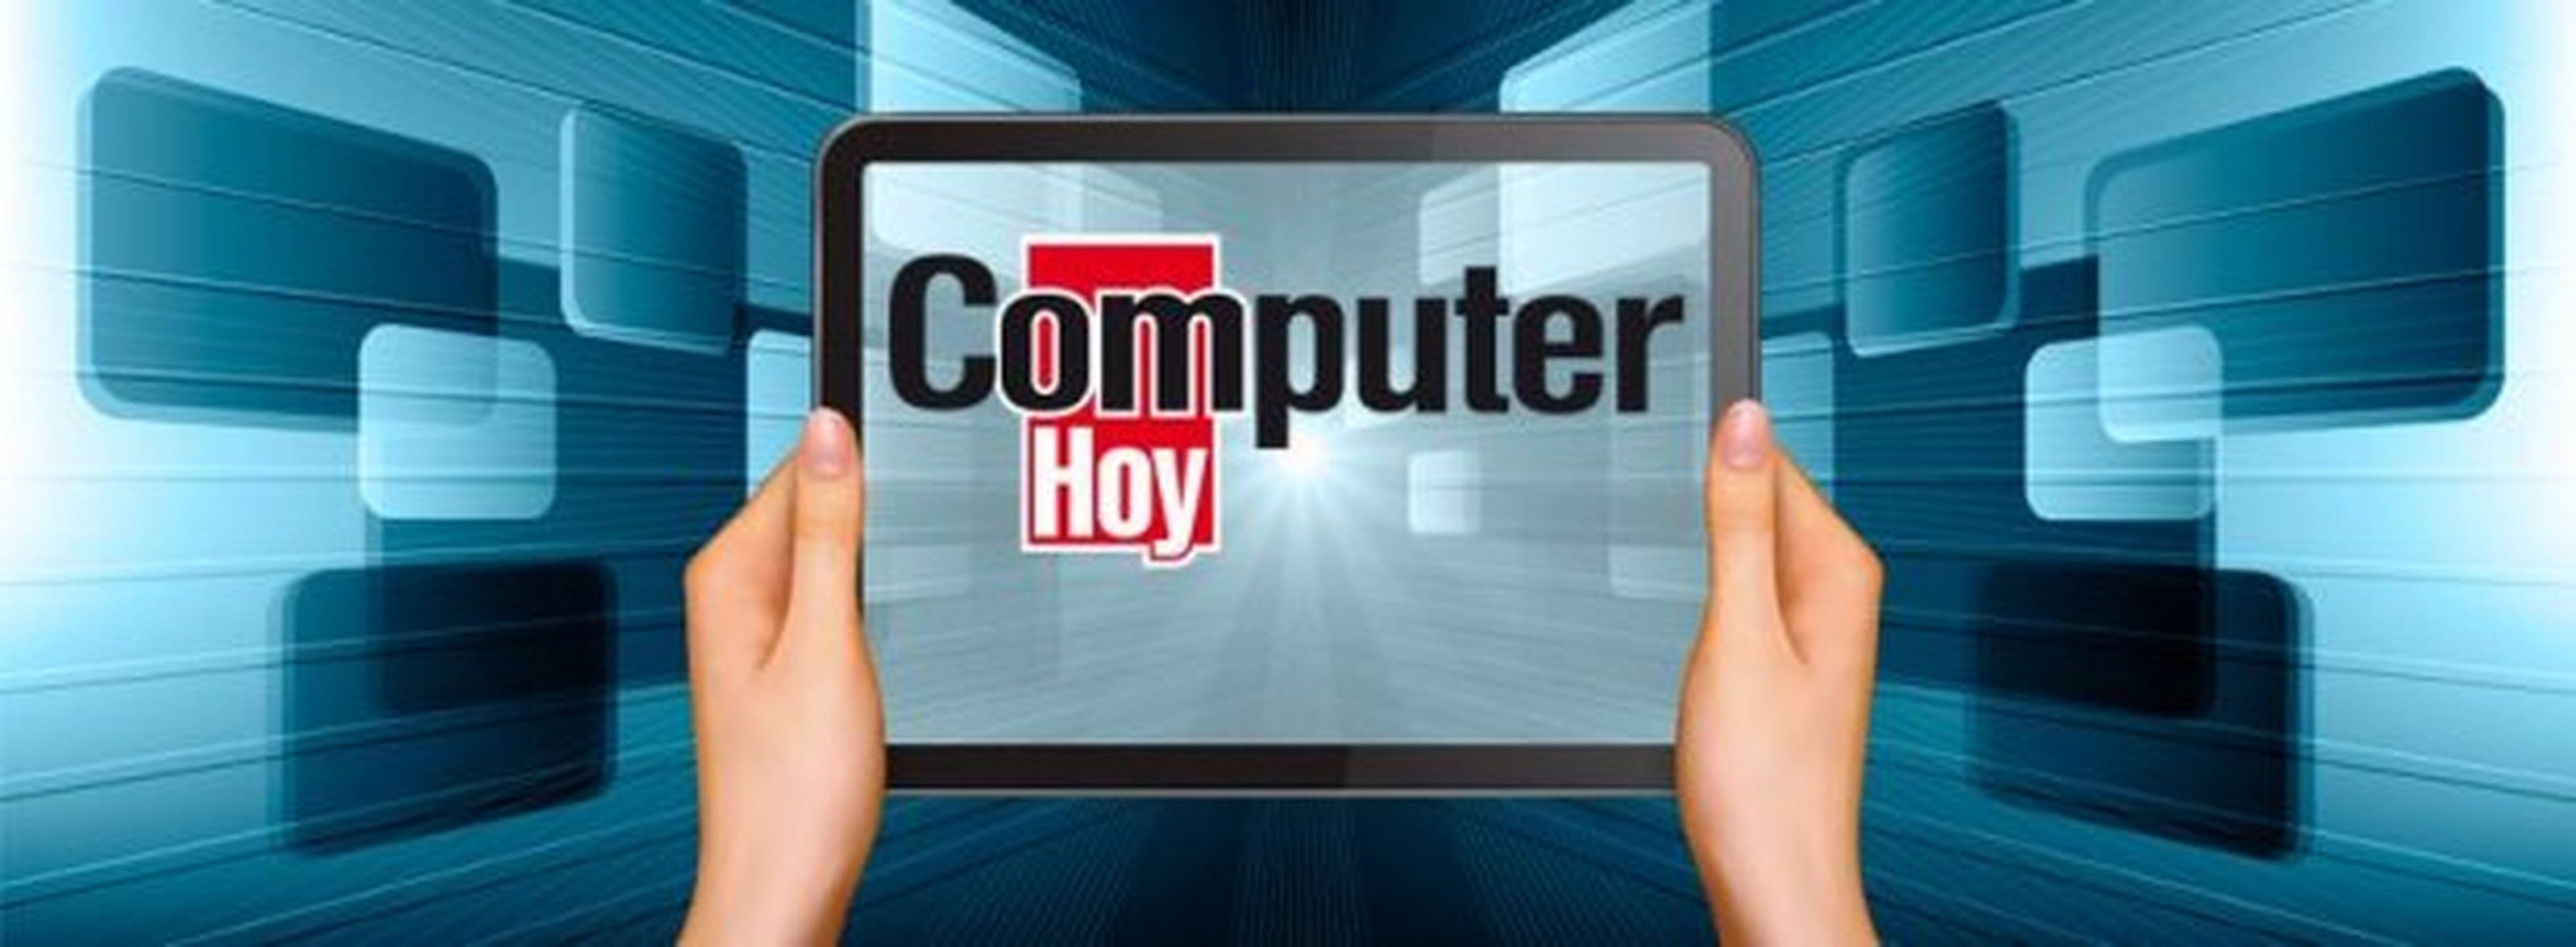 ComputerHoy.com